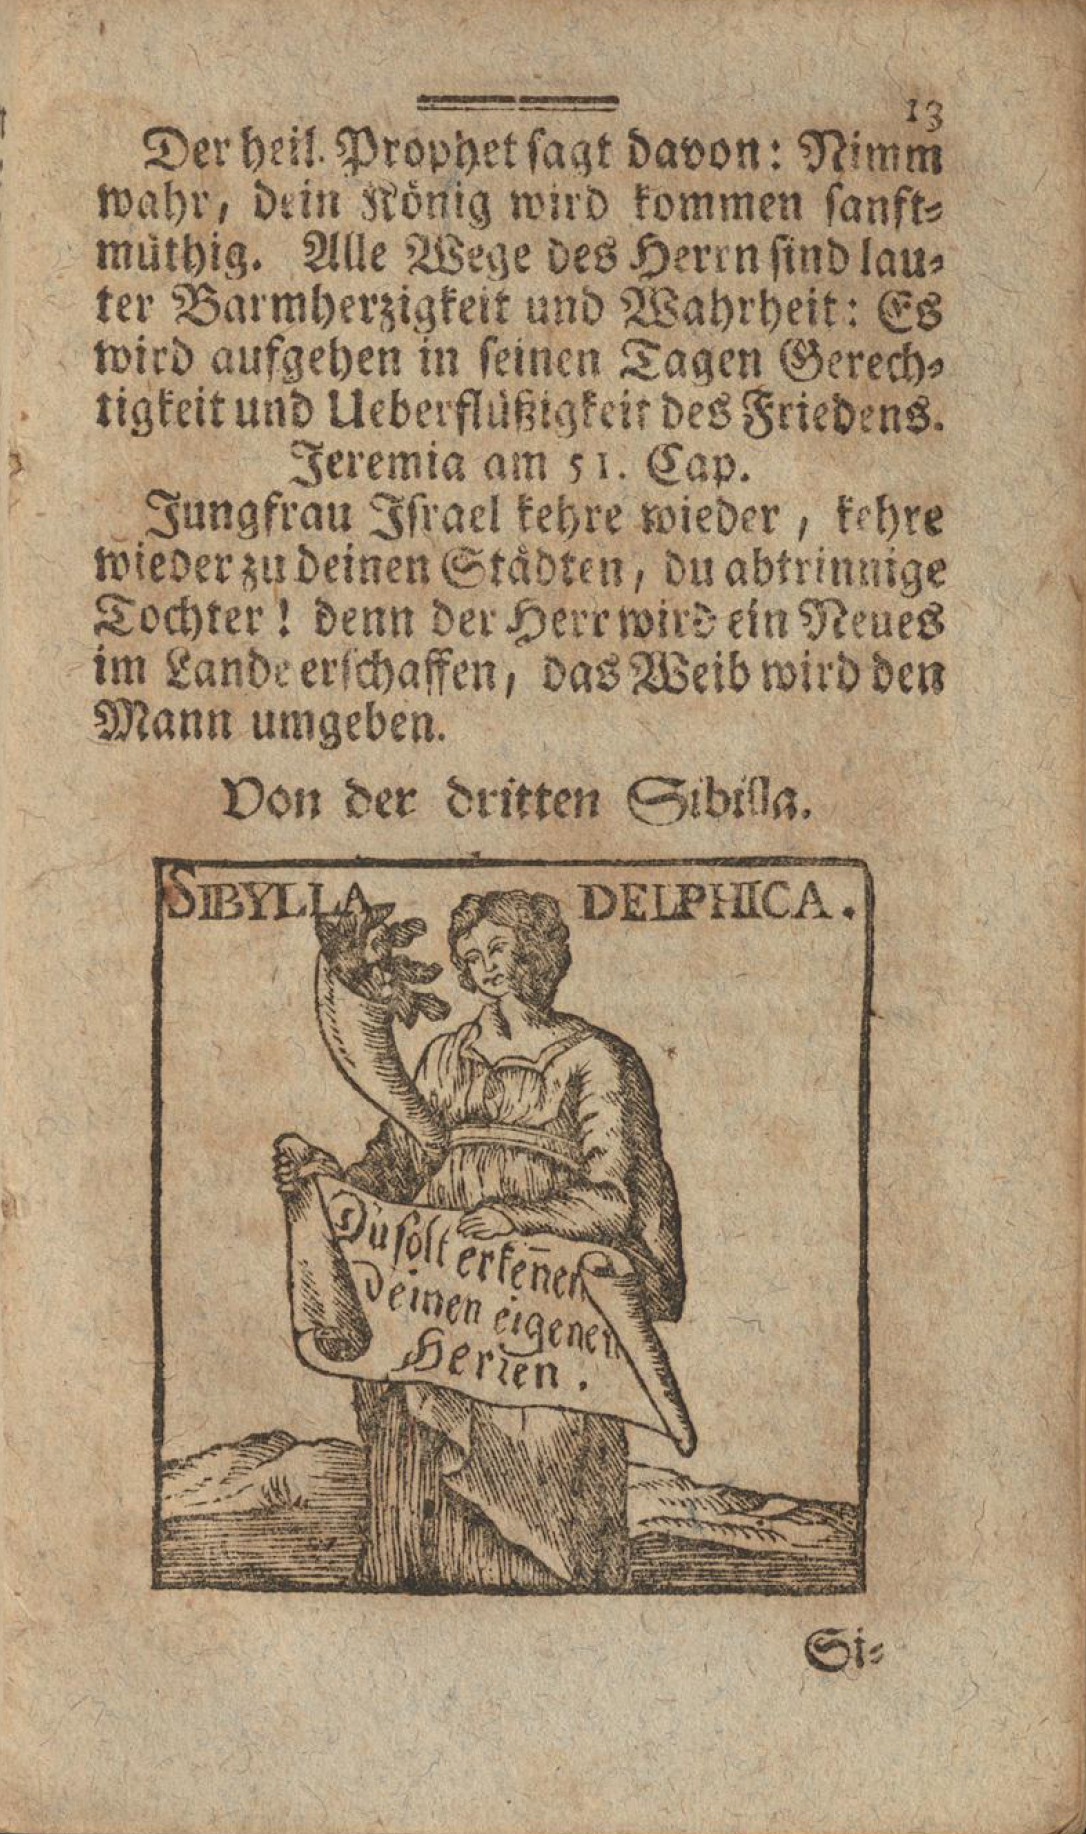 Darstellung der antiken delphischen Sybille, Pythia.